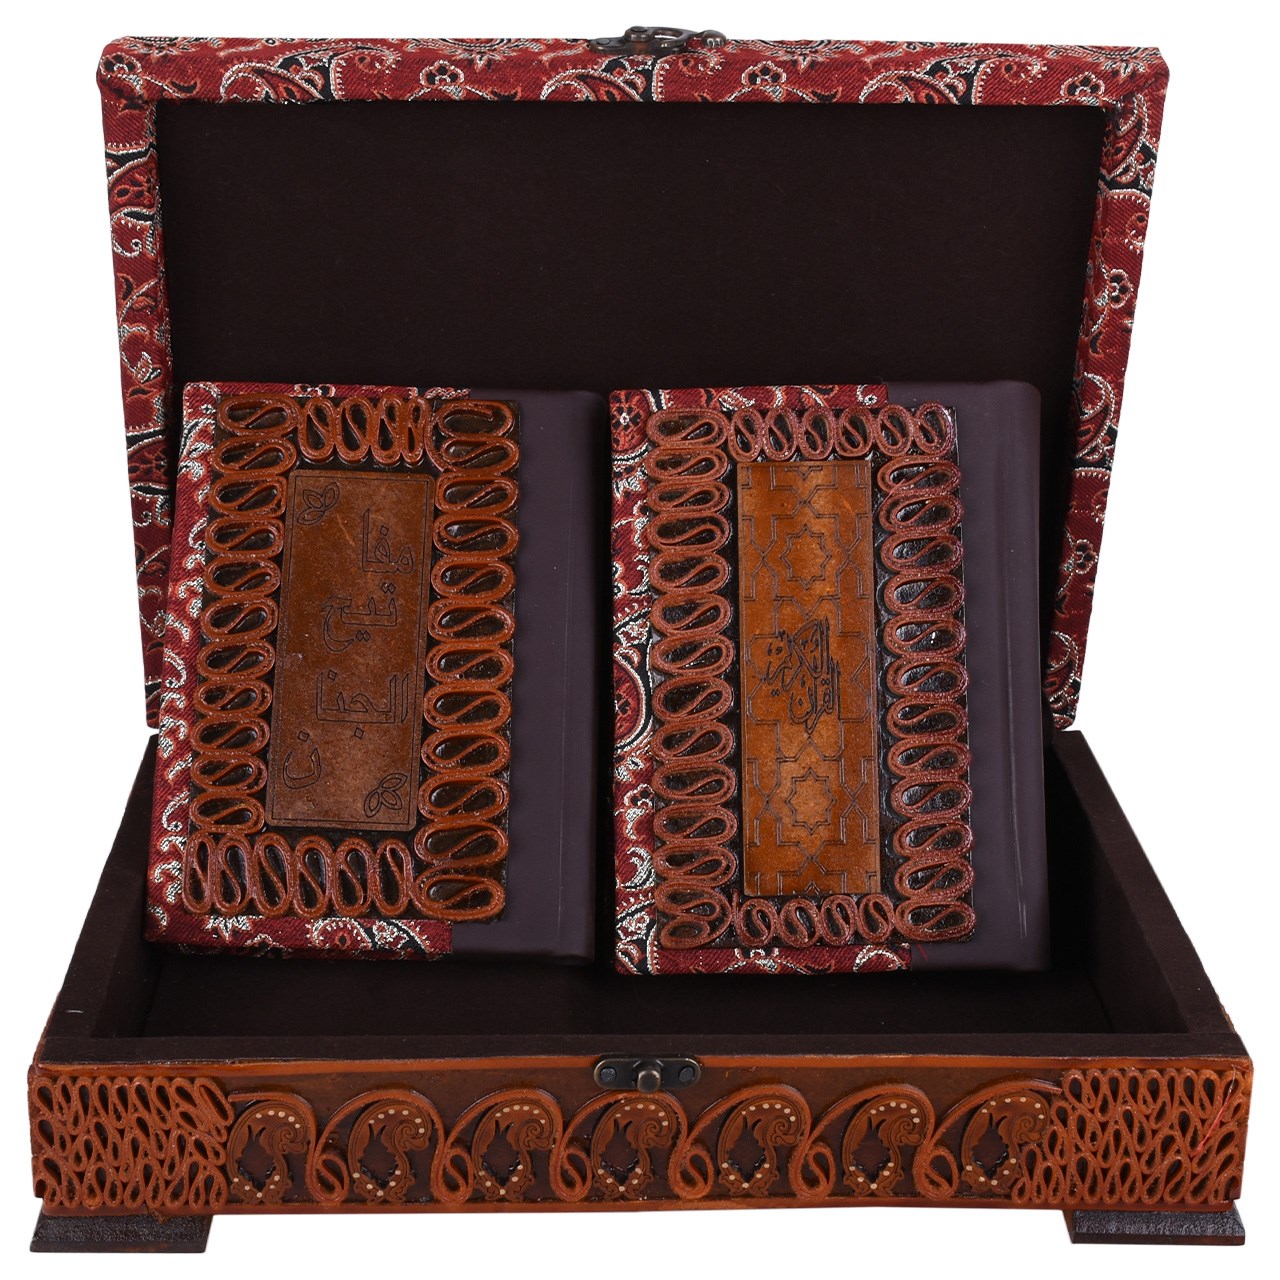 جعبه و کتابهای قرآن کریم و مفاتیح الجنان مدل 00 -10 سایز متوسط